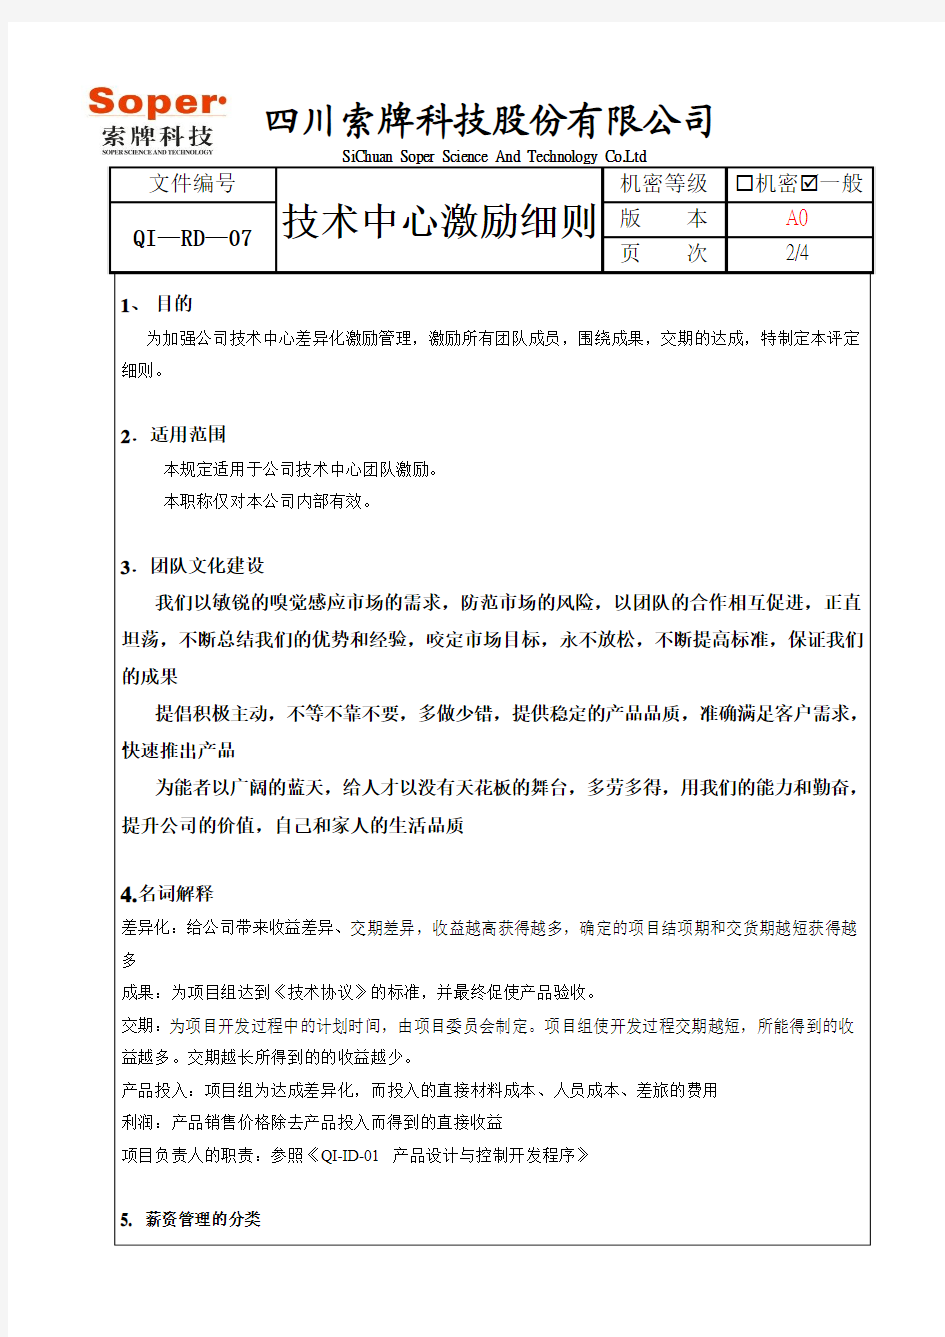 QI—RD—07技术中心激励细则 - 2013.9.16